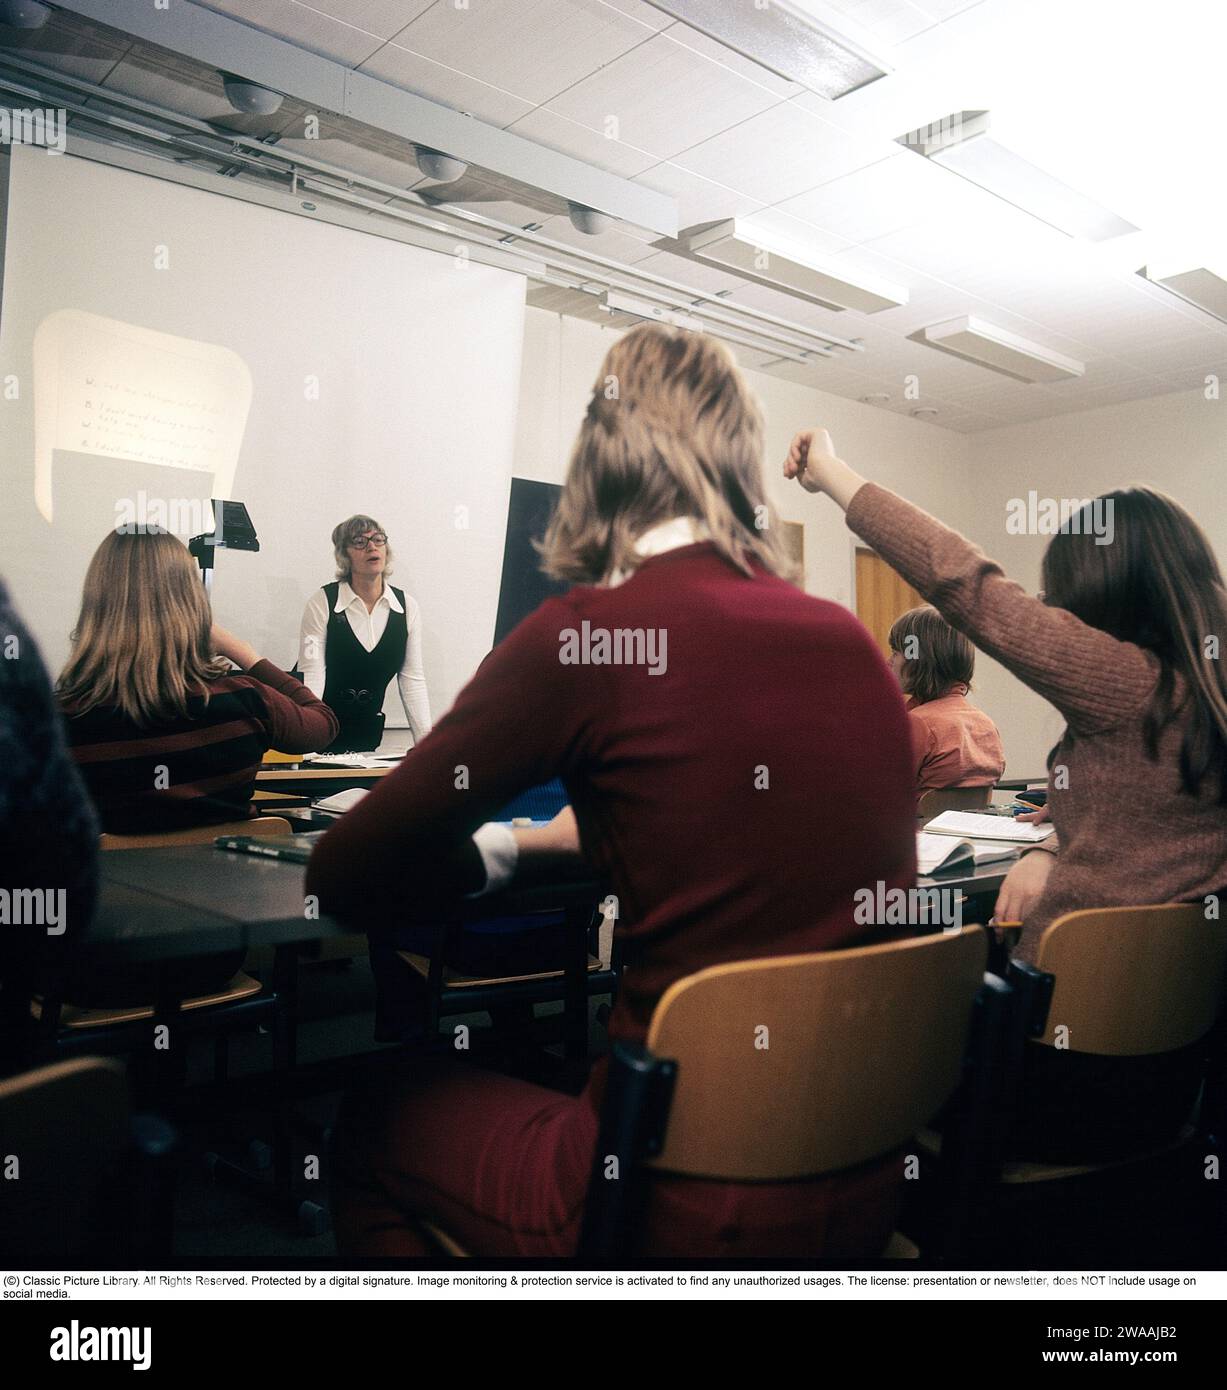 In den 1970er Jahren Eine Schulklasse sitzt während eines Unterrichts mit einer Lehrerin auf den Bänken. Vorne steht ein Overheadprojektor, der damals in Klassenzimmern üblich war und das transparente Blatt mit Text und Bildern auf dem Gerät auf dem Bildschirm zeigte. Overheadprojektoren wurden vor der Einführung computergestützter Projektionen in Bildung und Wirtschaft weit verbreitet. Schweden 1970er Jahre Stockfoto